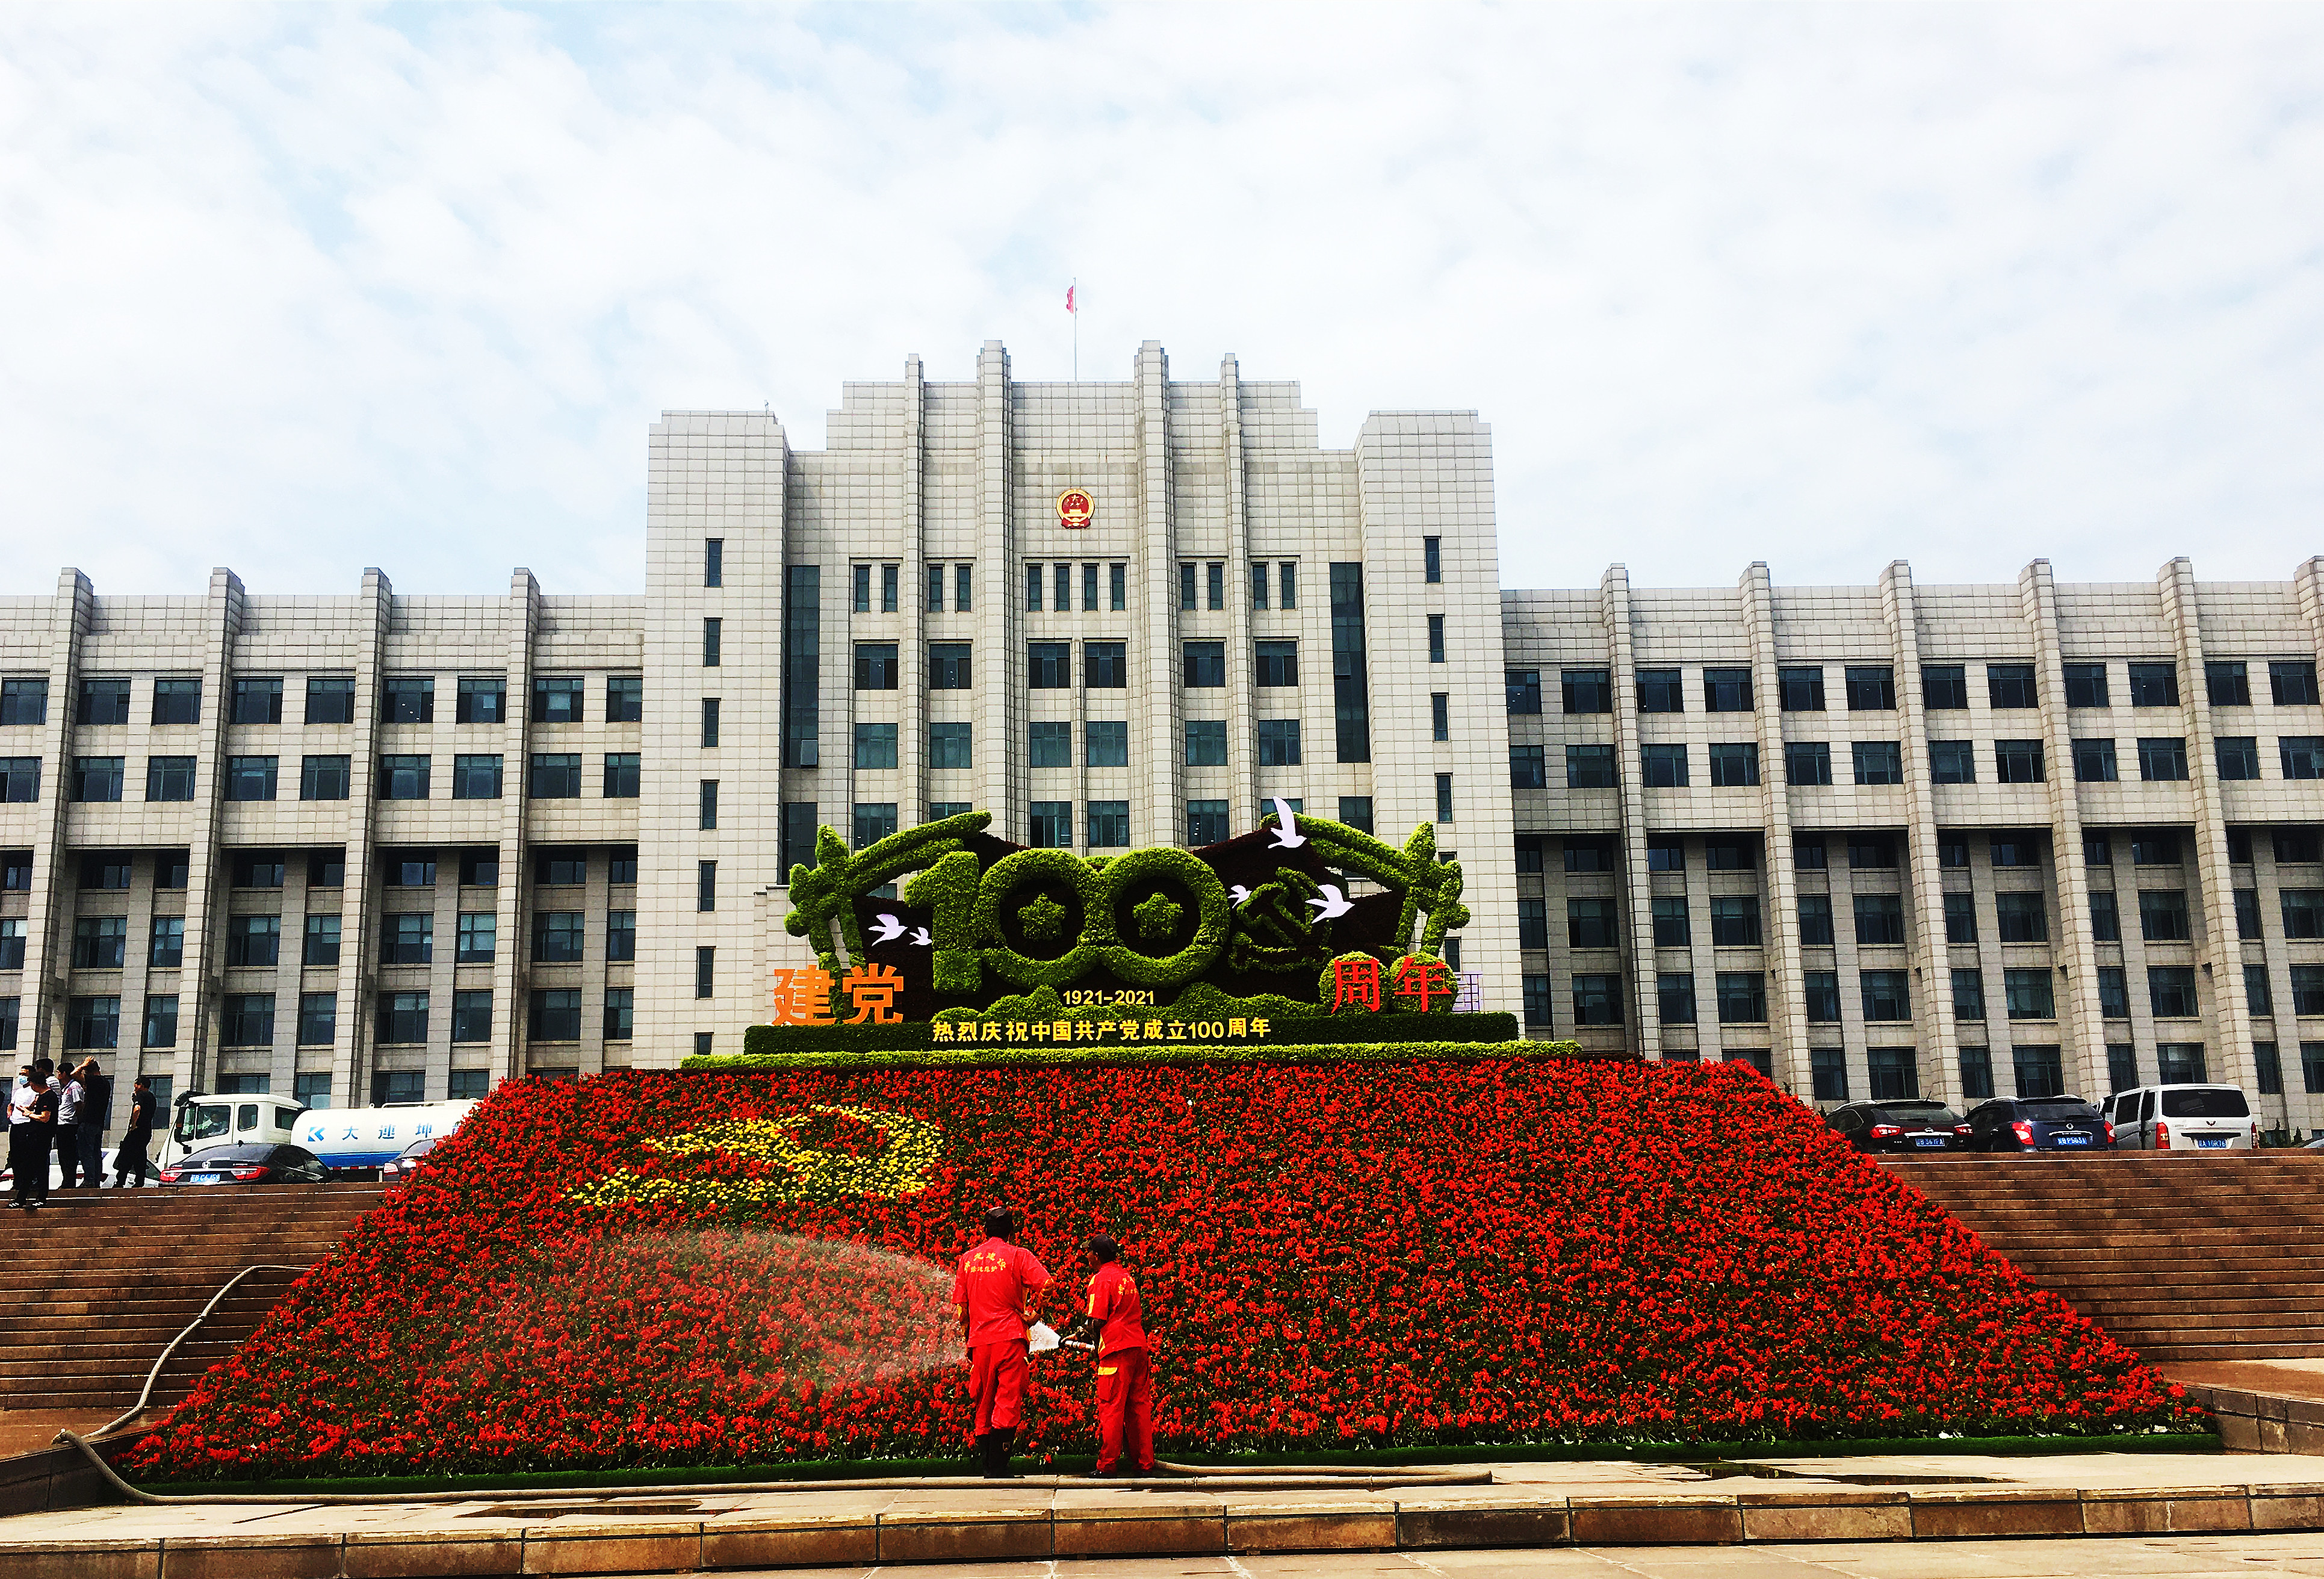 新区管委会广场增加七一主题大型花卉组合图案布景